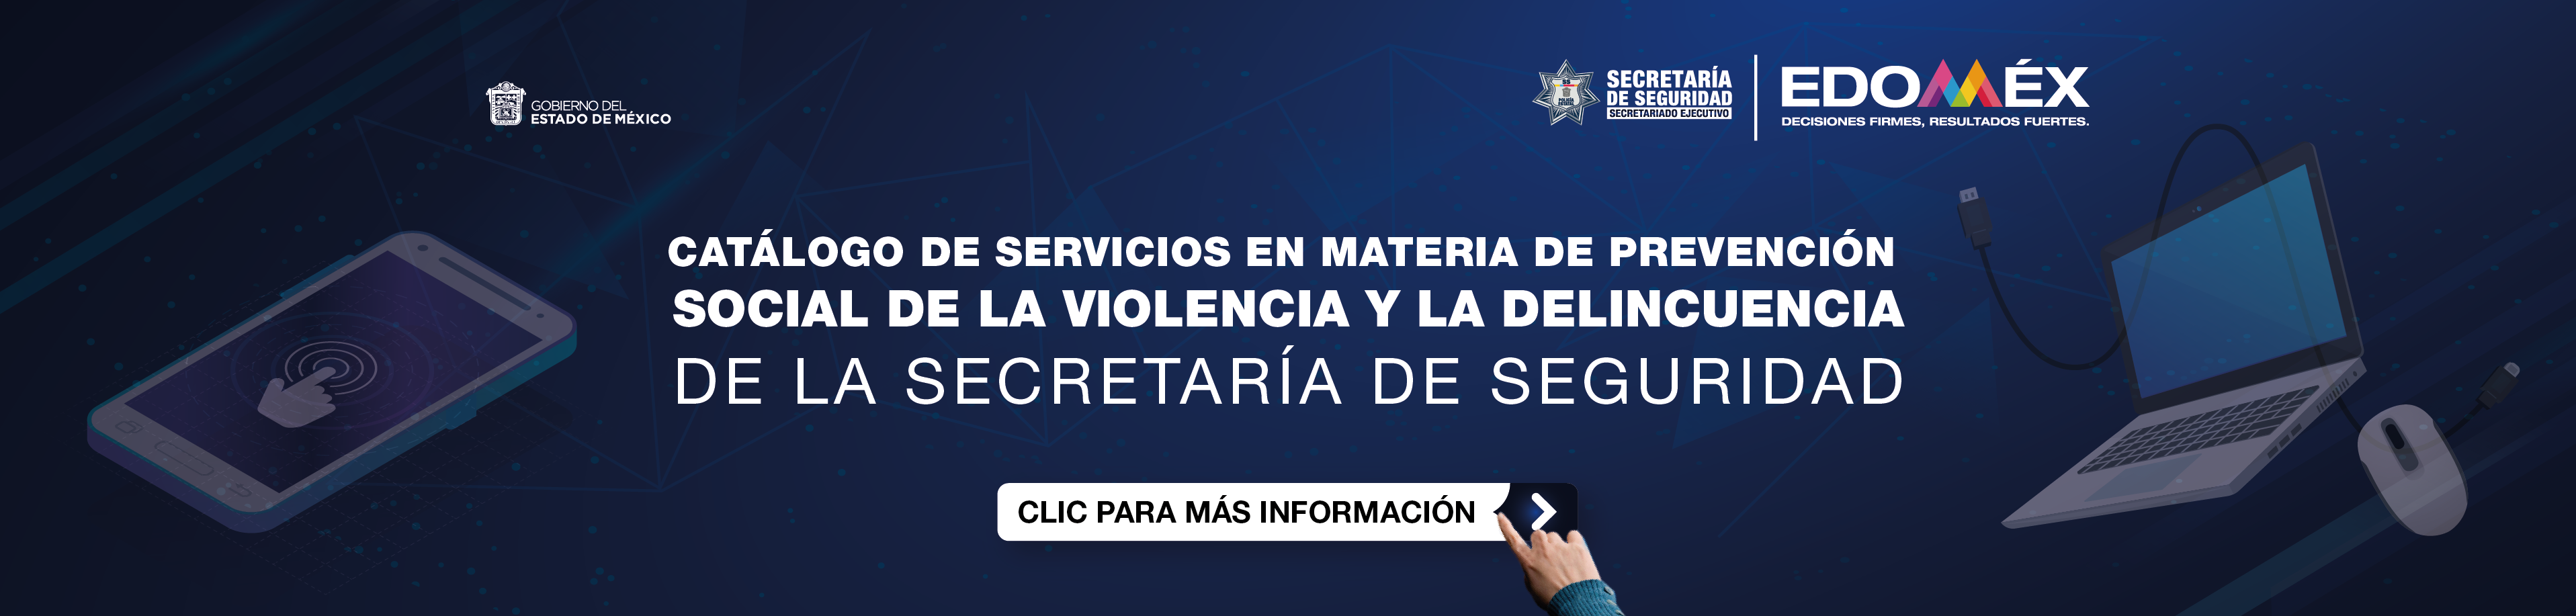 Catalogo de Servicios en Materia de Prevención Social de la Violencia y la Delincuencia de la Secretaría de Seguridad